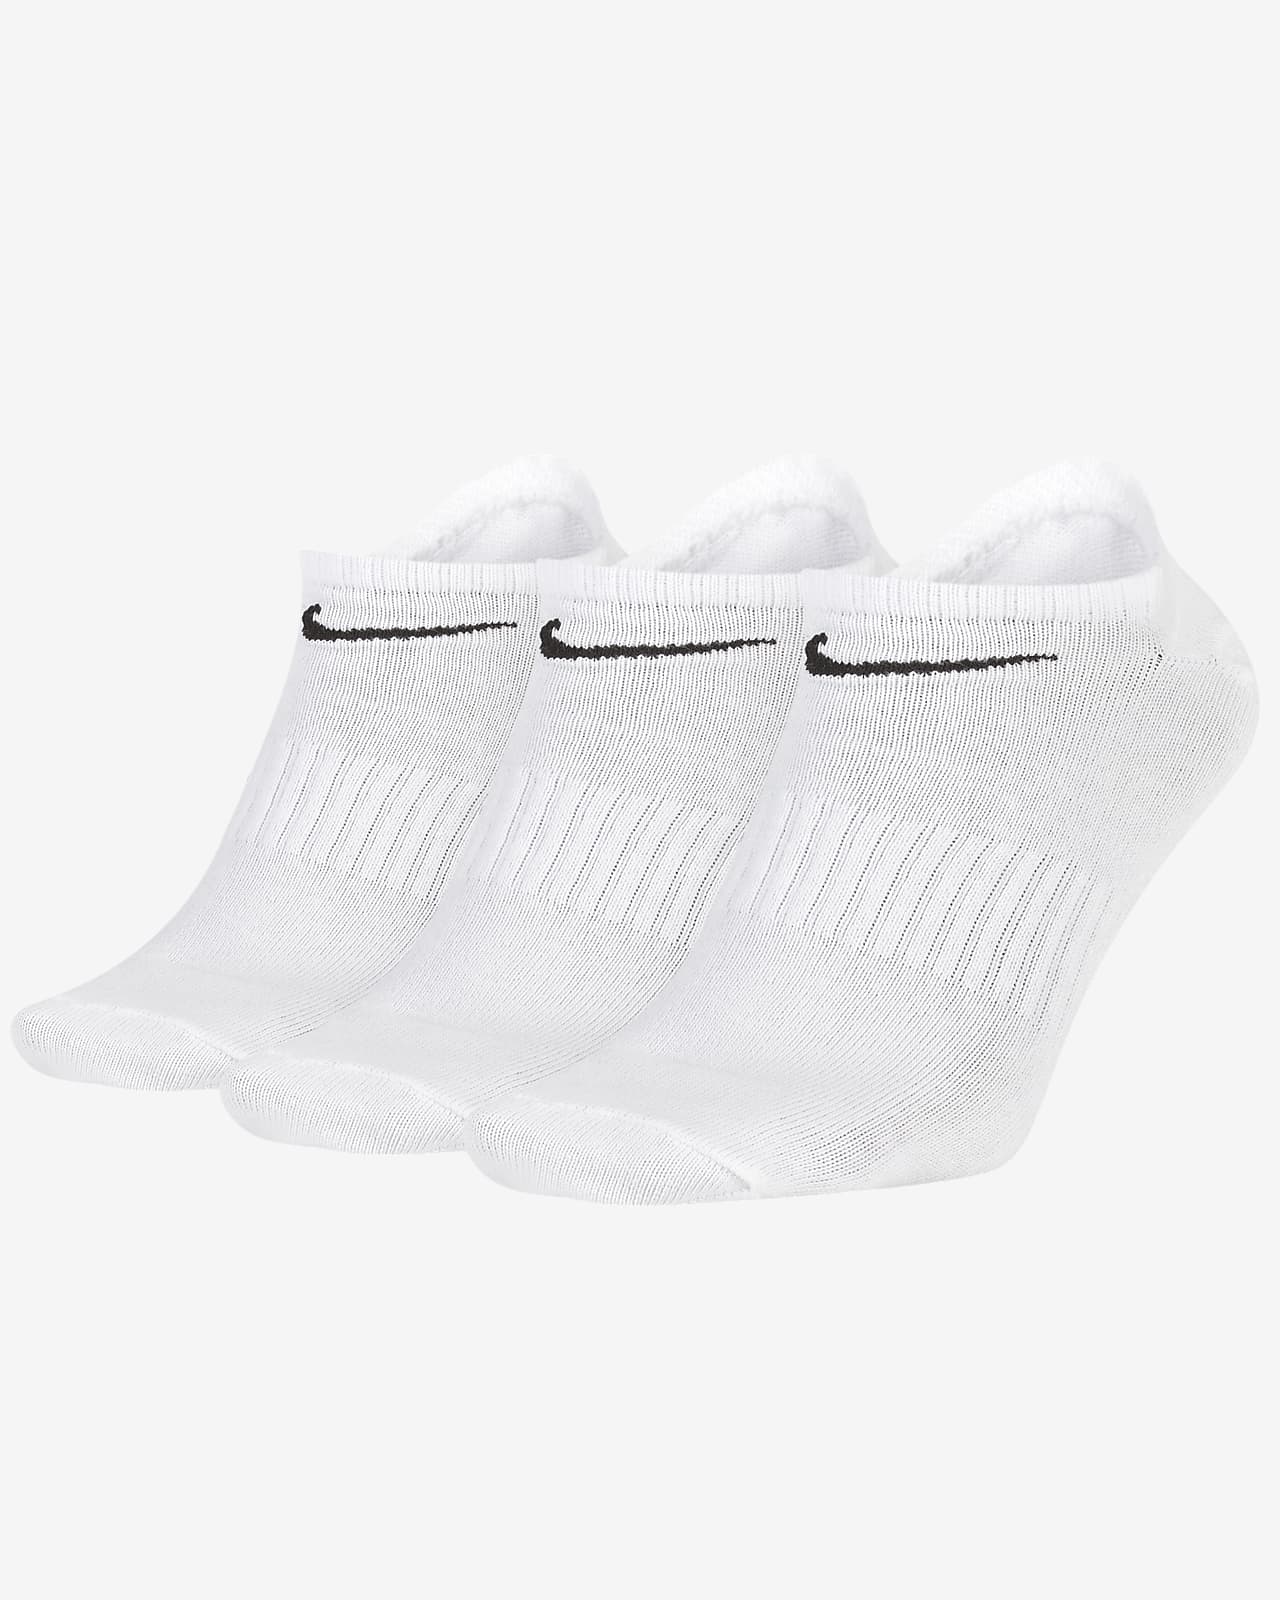 Χαμηλές κάλτσες προπόνησης Nike Everyday Lightweight (3 ζευγάρια)